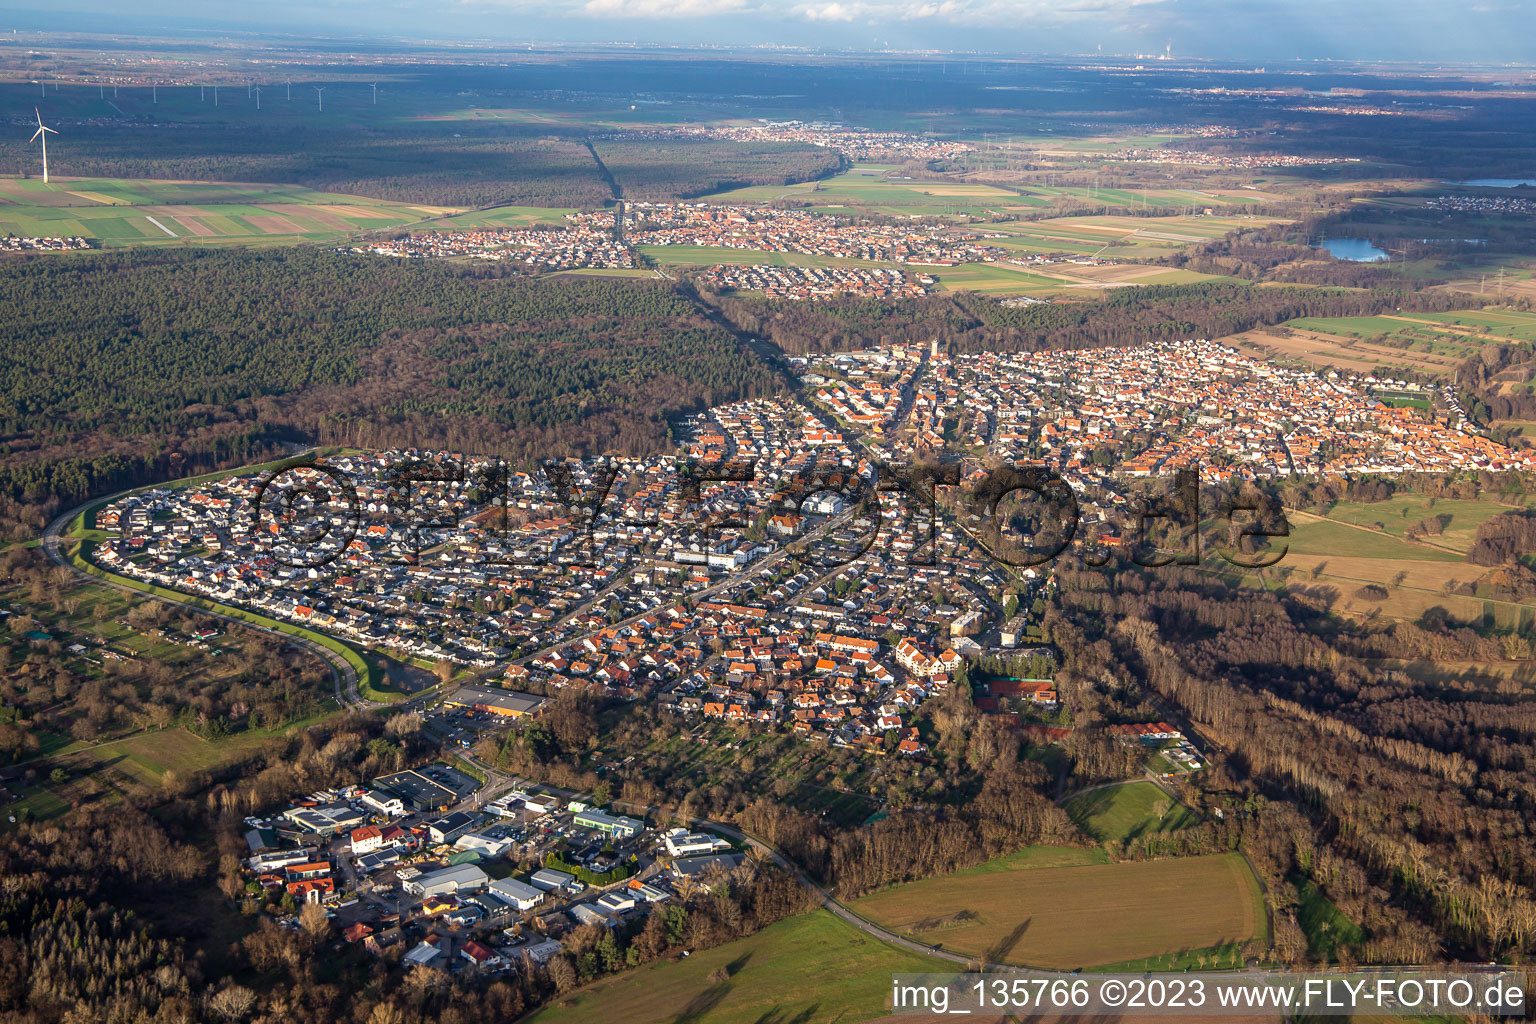 Jockgrim dans le département Rhénanie-Palatinat, Allemagne vue d'en haut